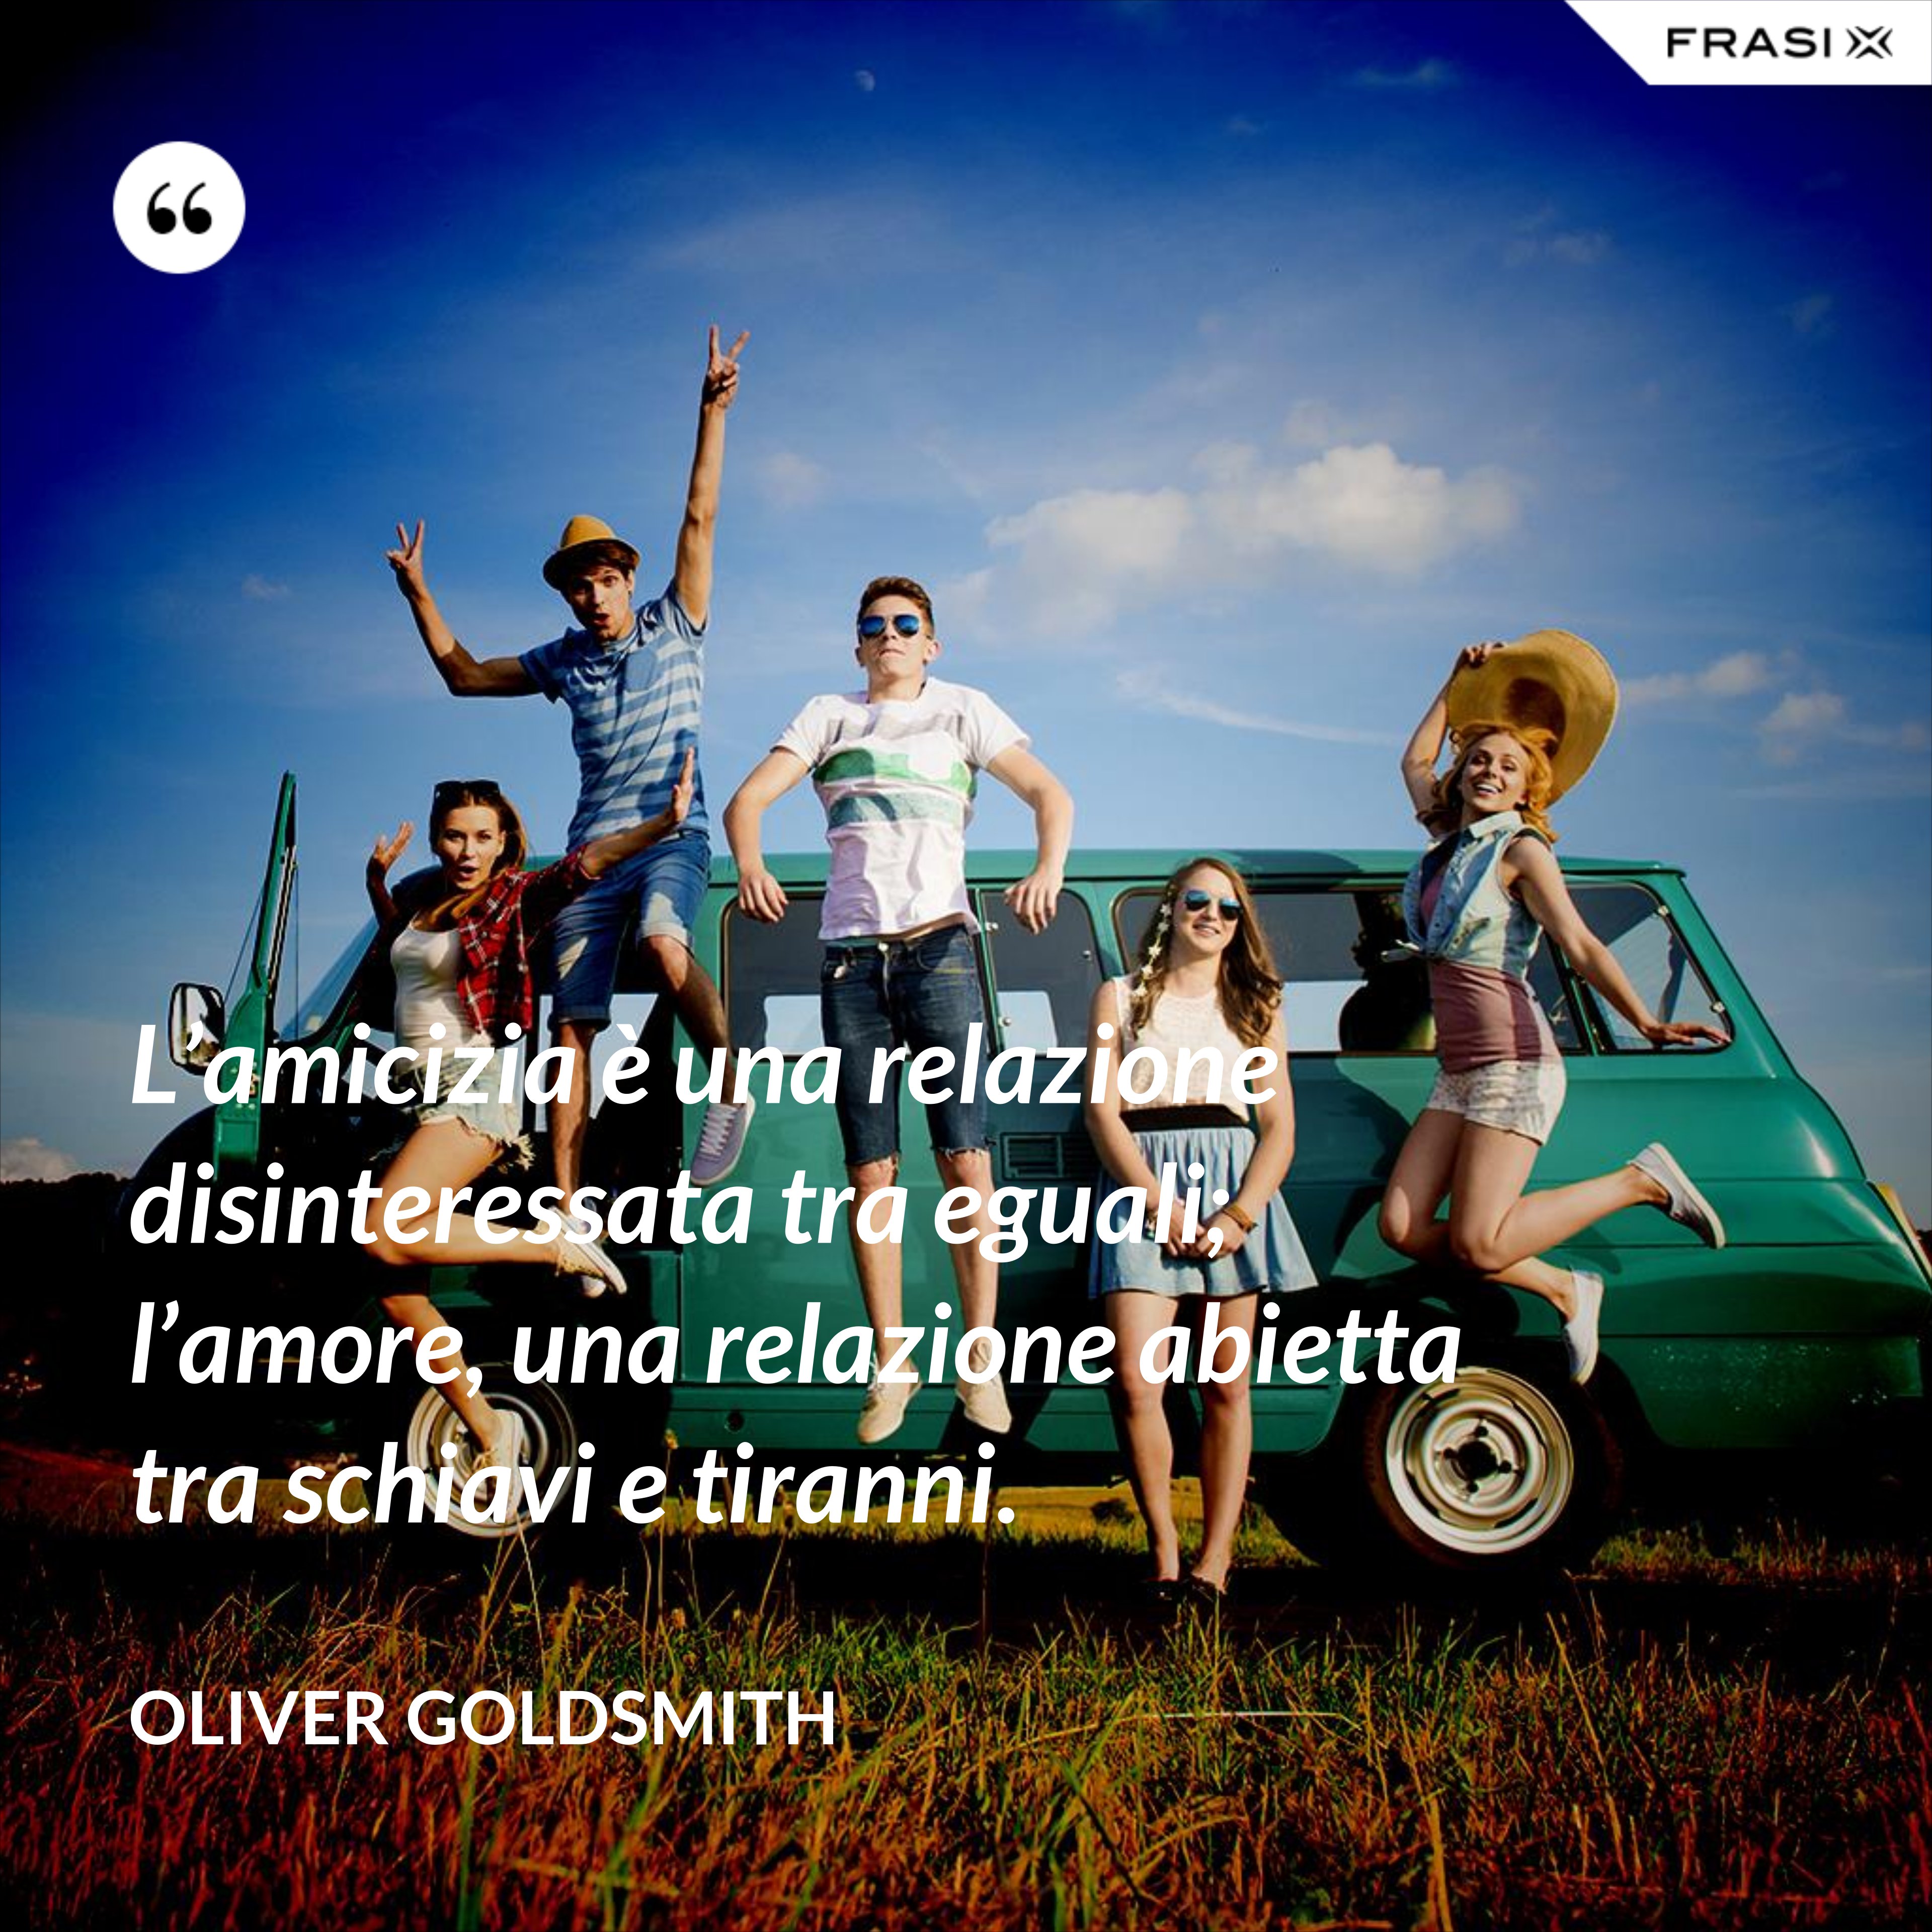 L’amicizia è una relazione disinteressata tra eguali; l’amore, una relazione abietta tra schiavi e tiranni. - Oliver Goldsmith